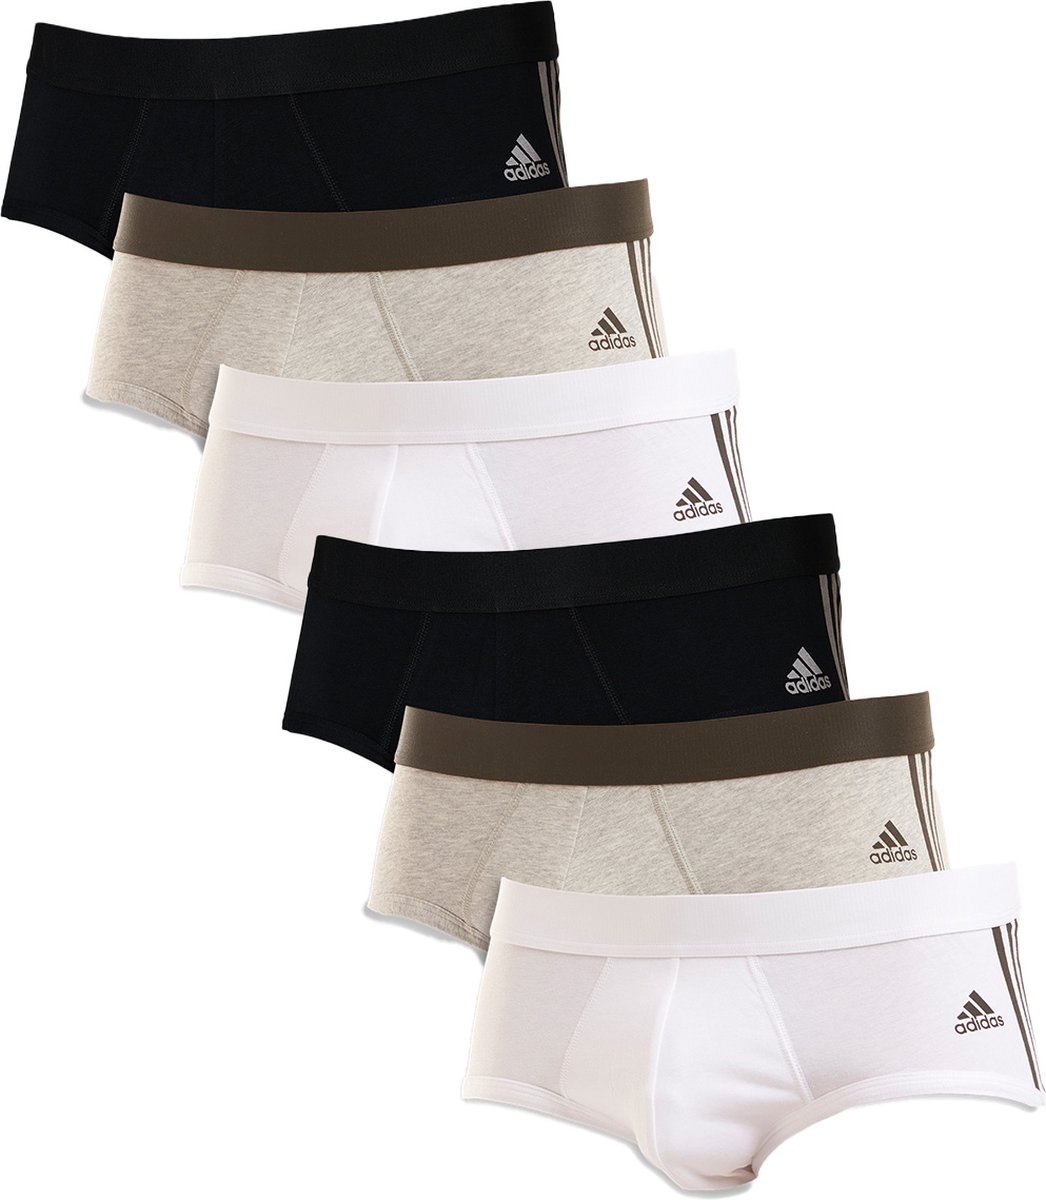 Adidas Lot de 6 slips / slips pour homme Active Flex Cotton 3 Stripes | bol